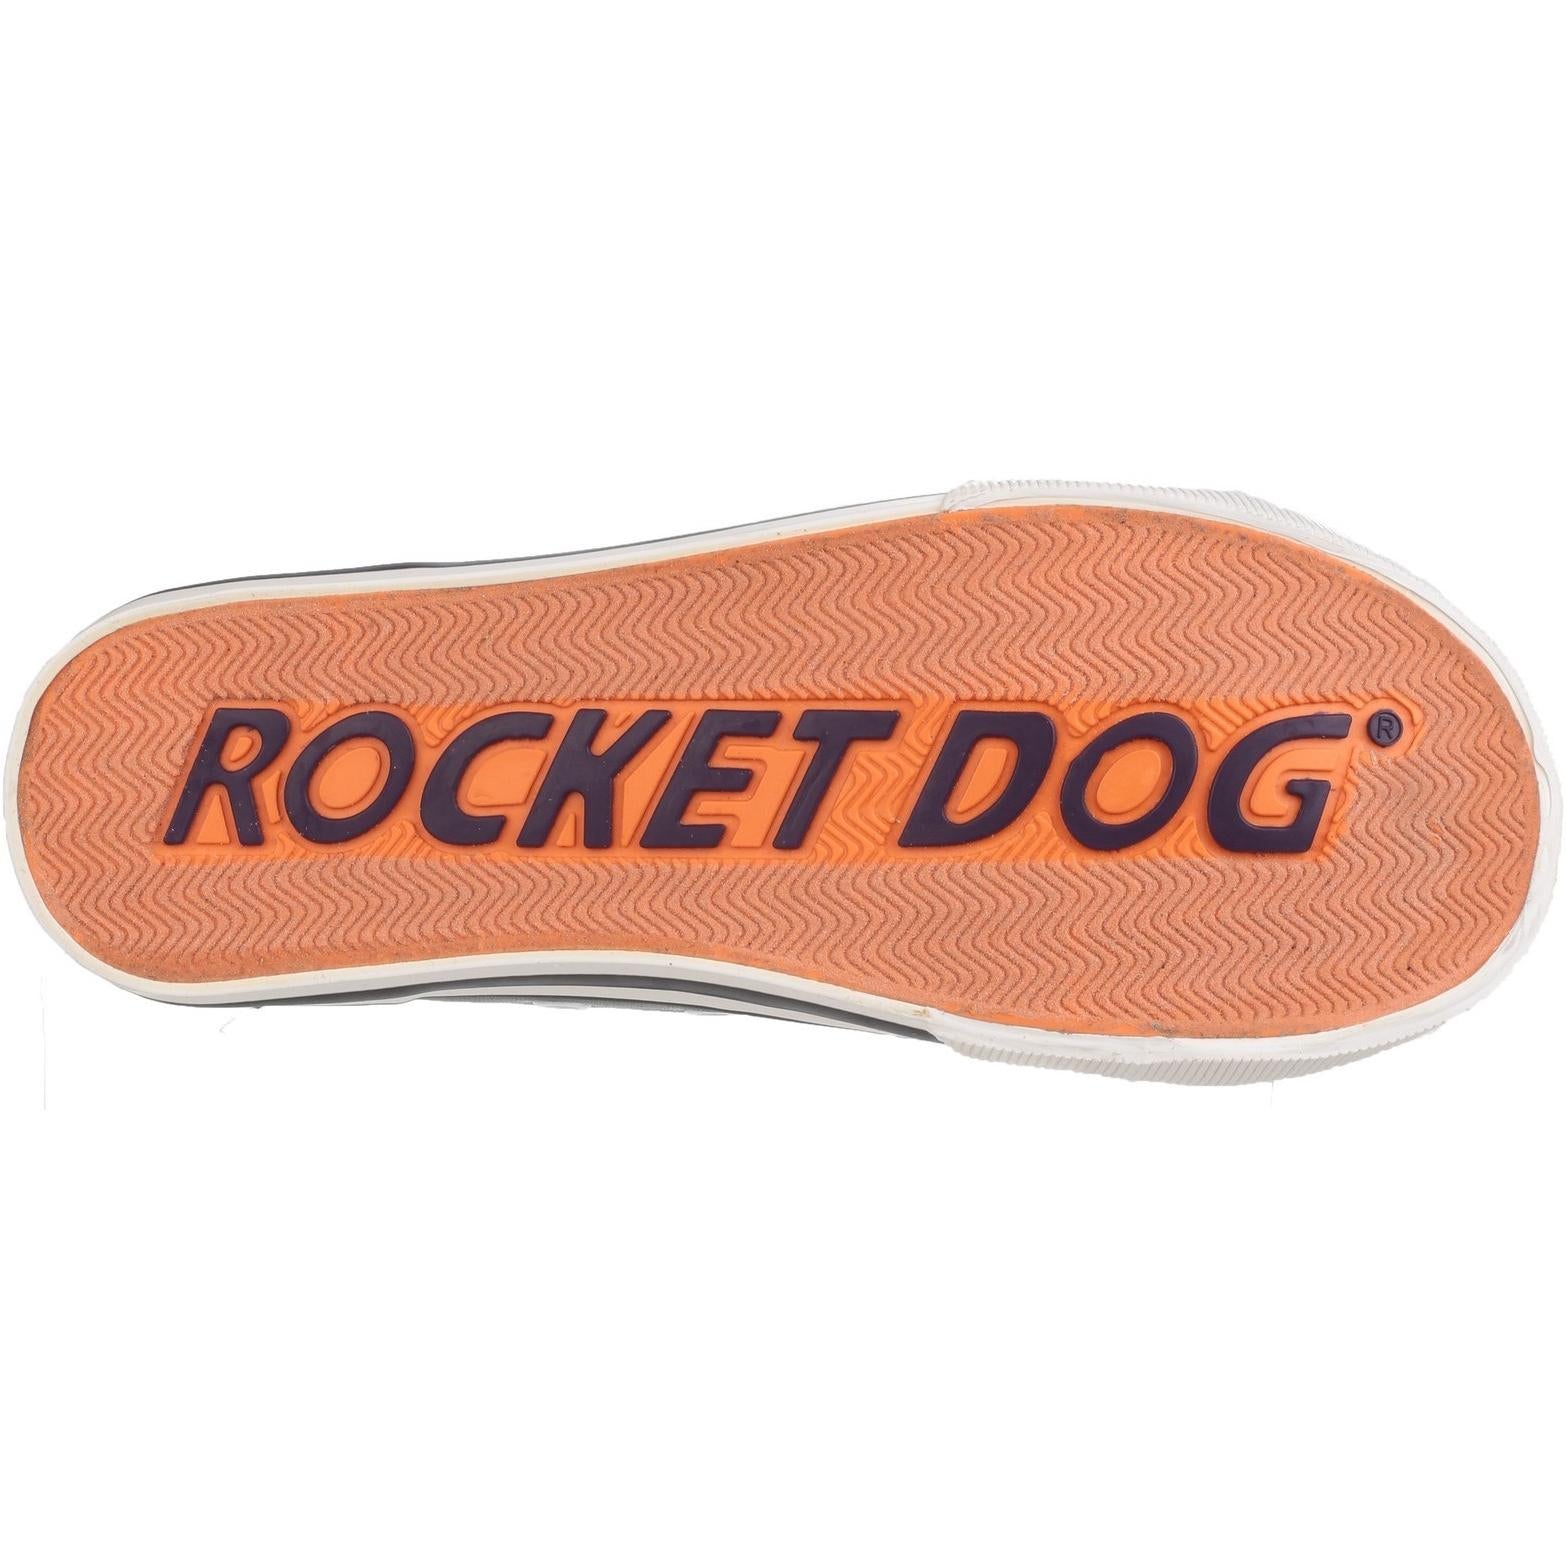 Rocket Dog Jazzin Lace Up Trainer